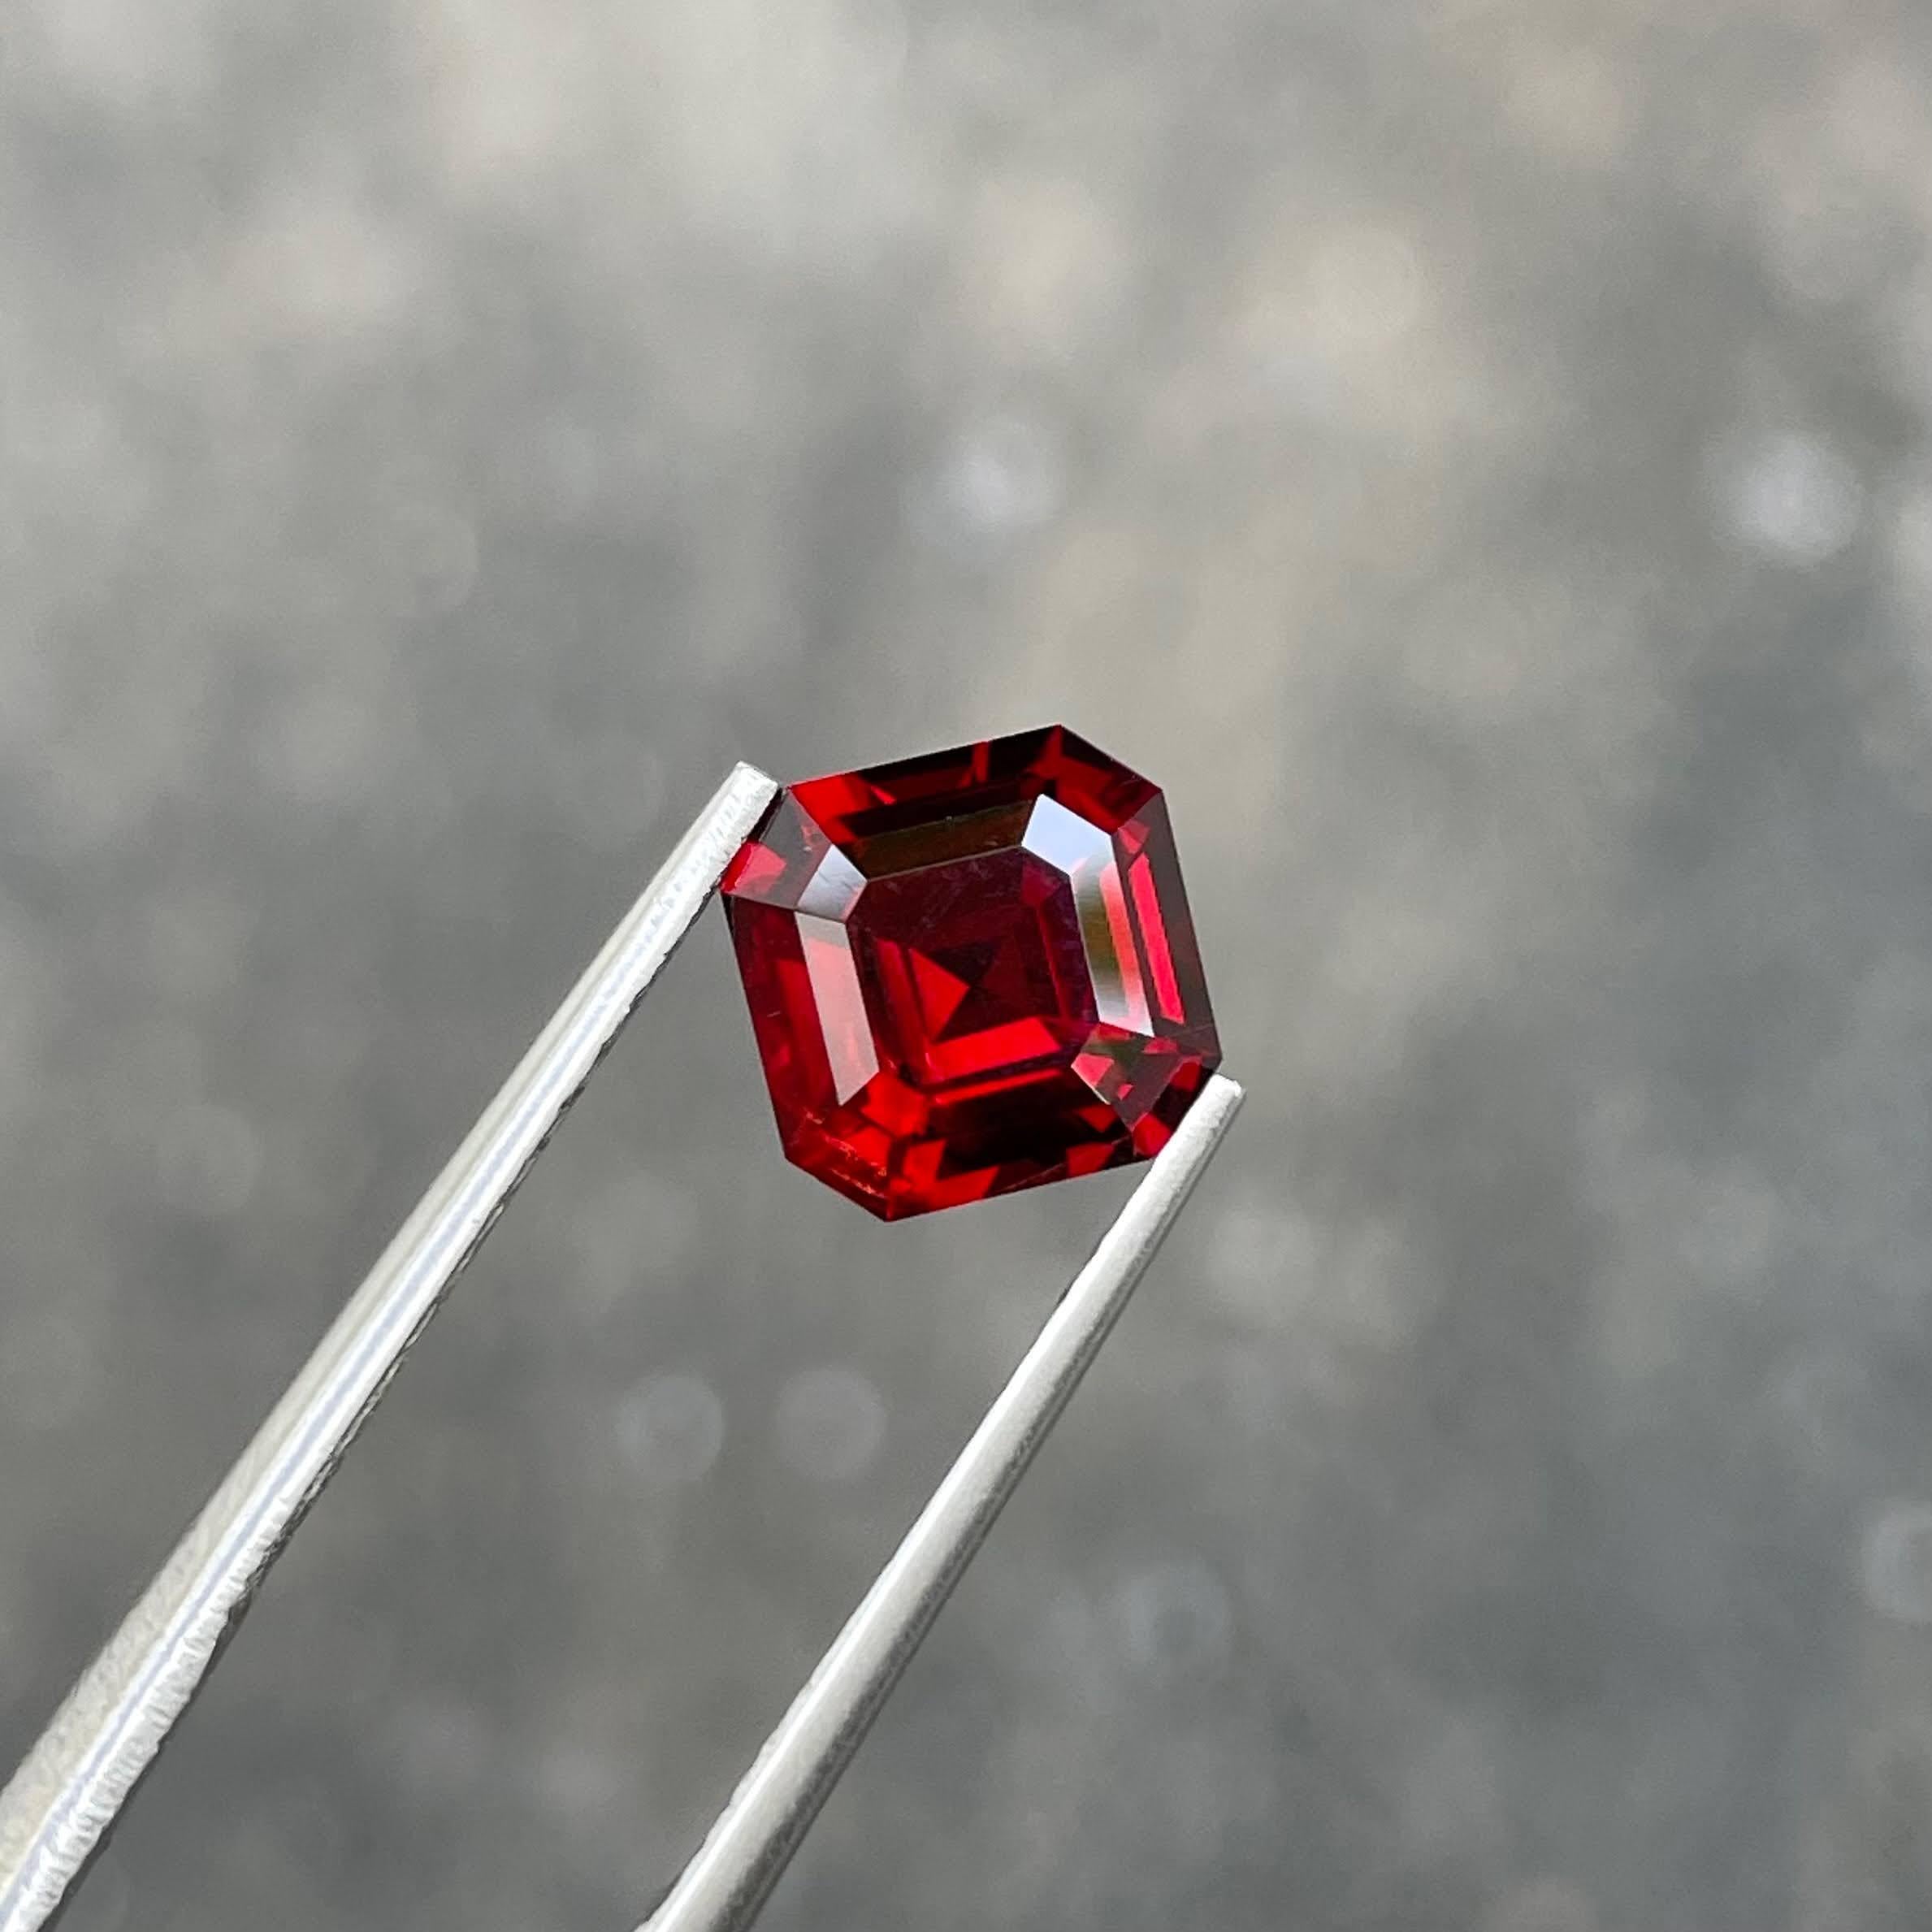 Modern 2.50 carats Vivid Red Loose Garnet Stone Asscher Cut natural Tanzanian Gemstone For Sale